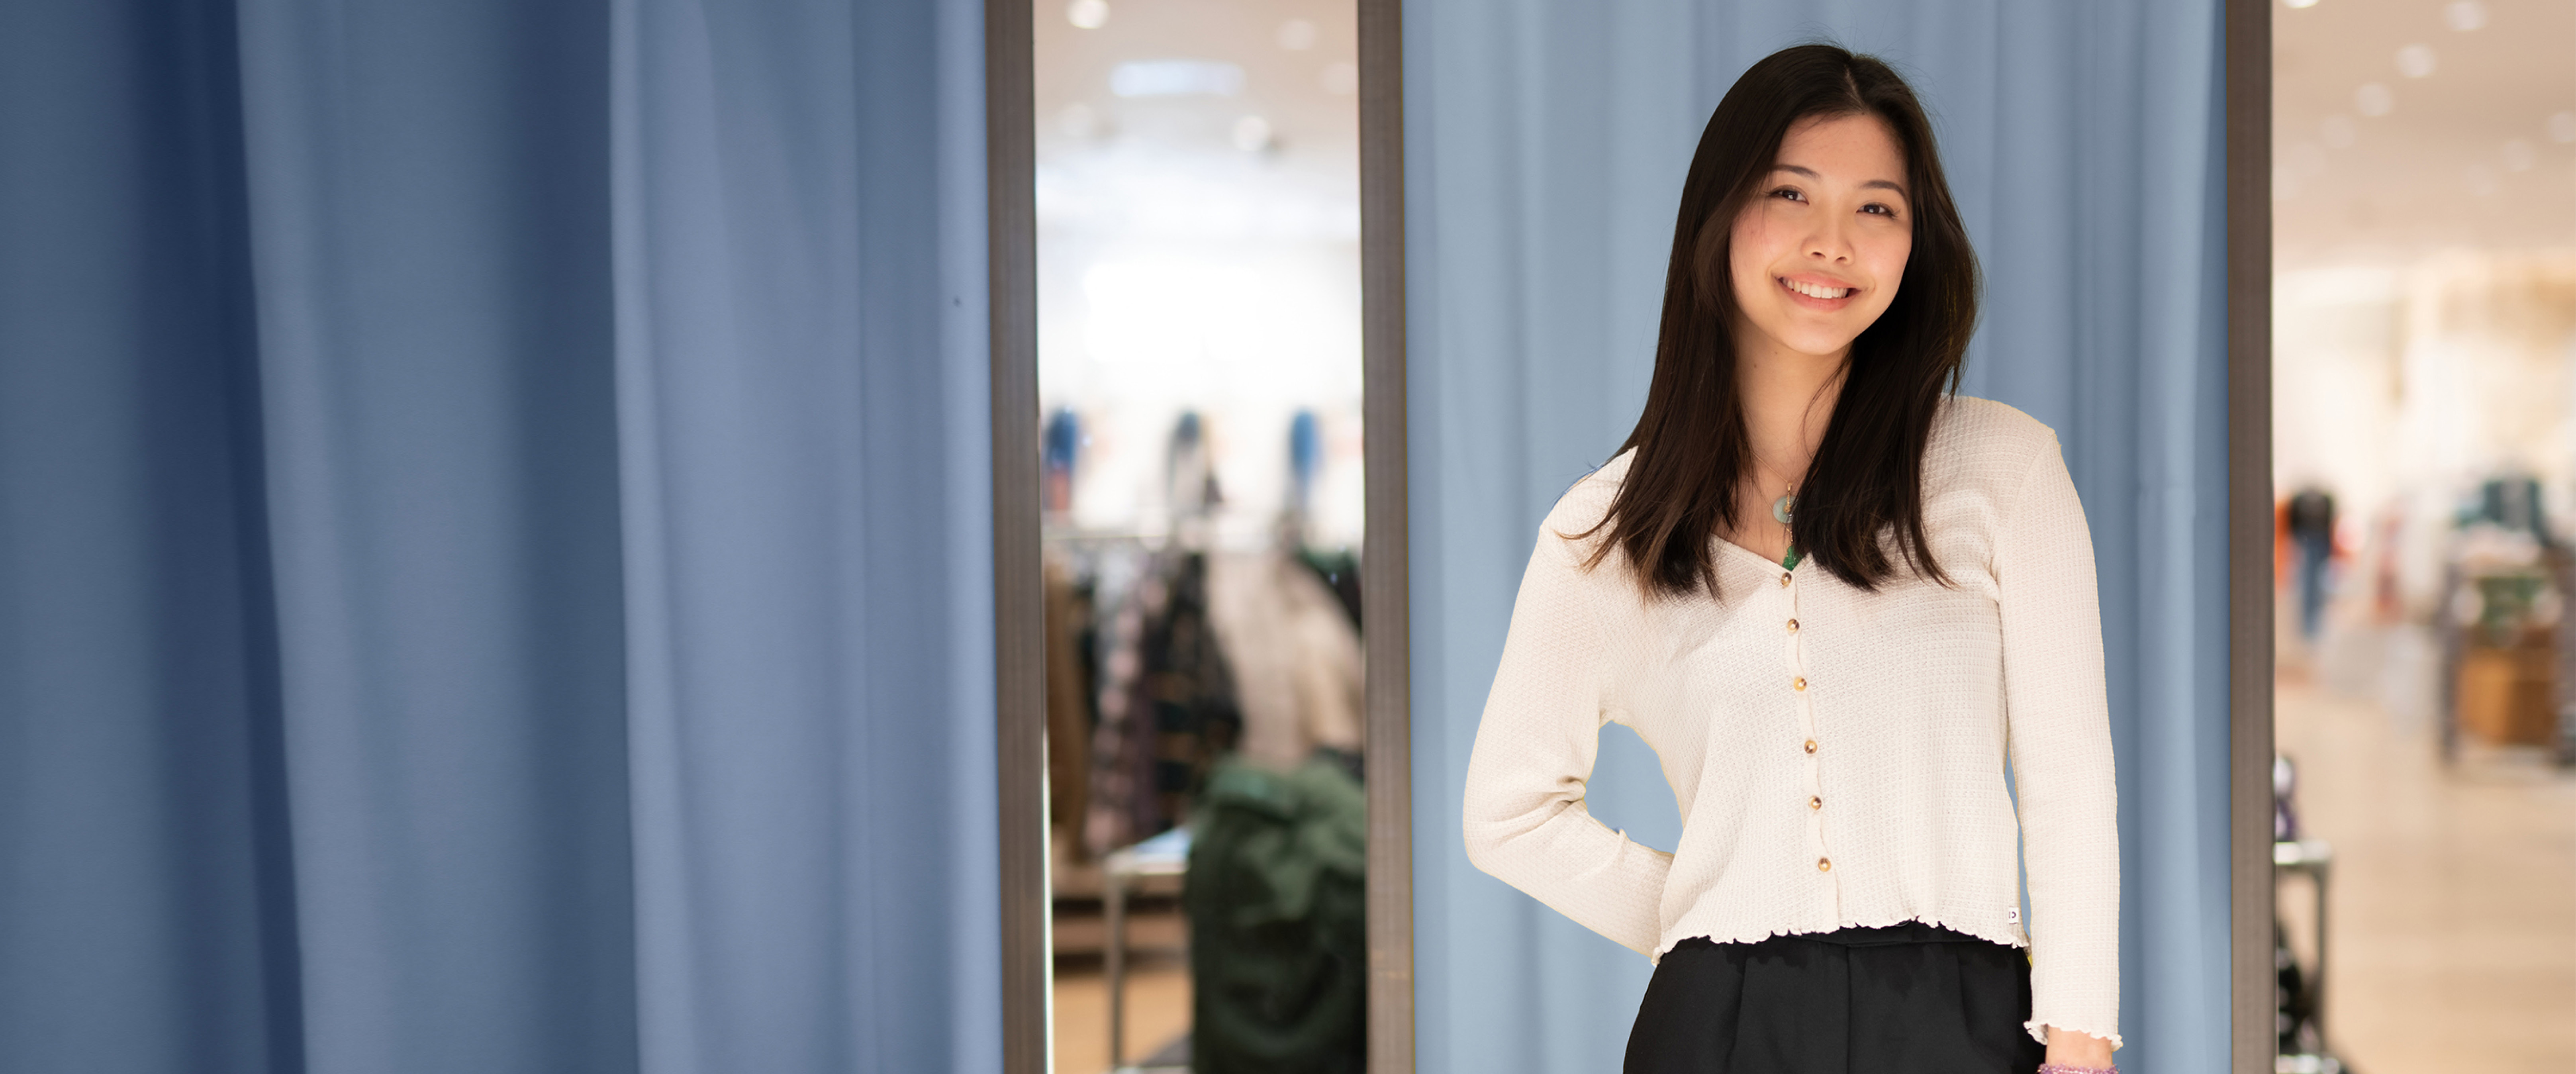 Junge Auszubildende mit schwarzen Haaren, asiatisch gelesen, modern gekleidet steht im Verkaufshaus vor Garderoben in Blautönen. 